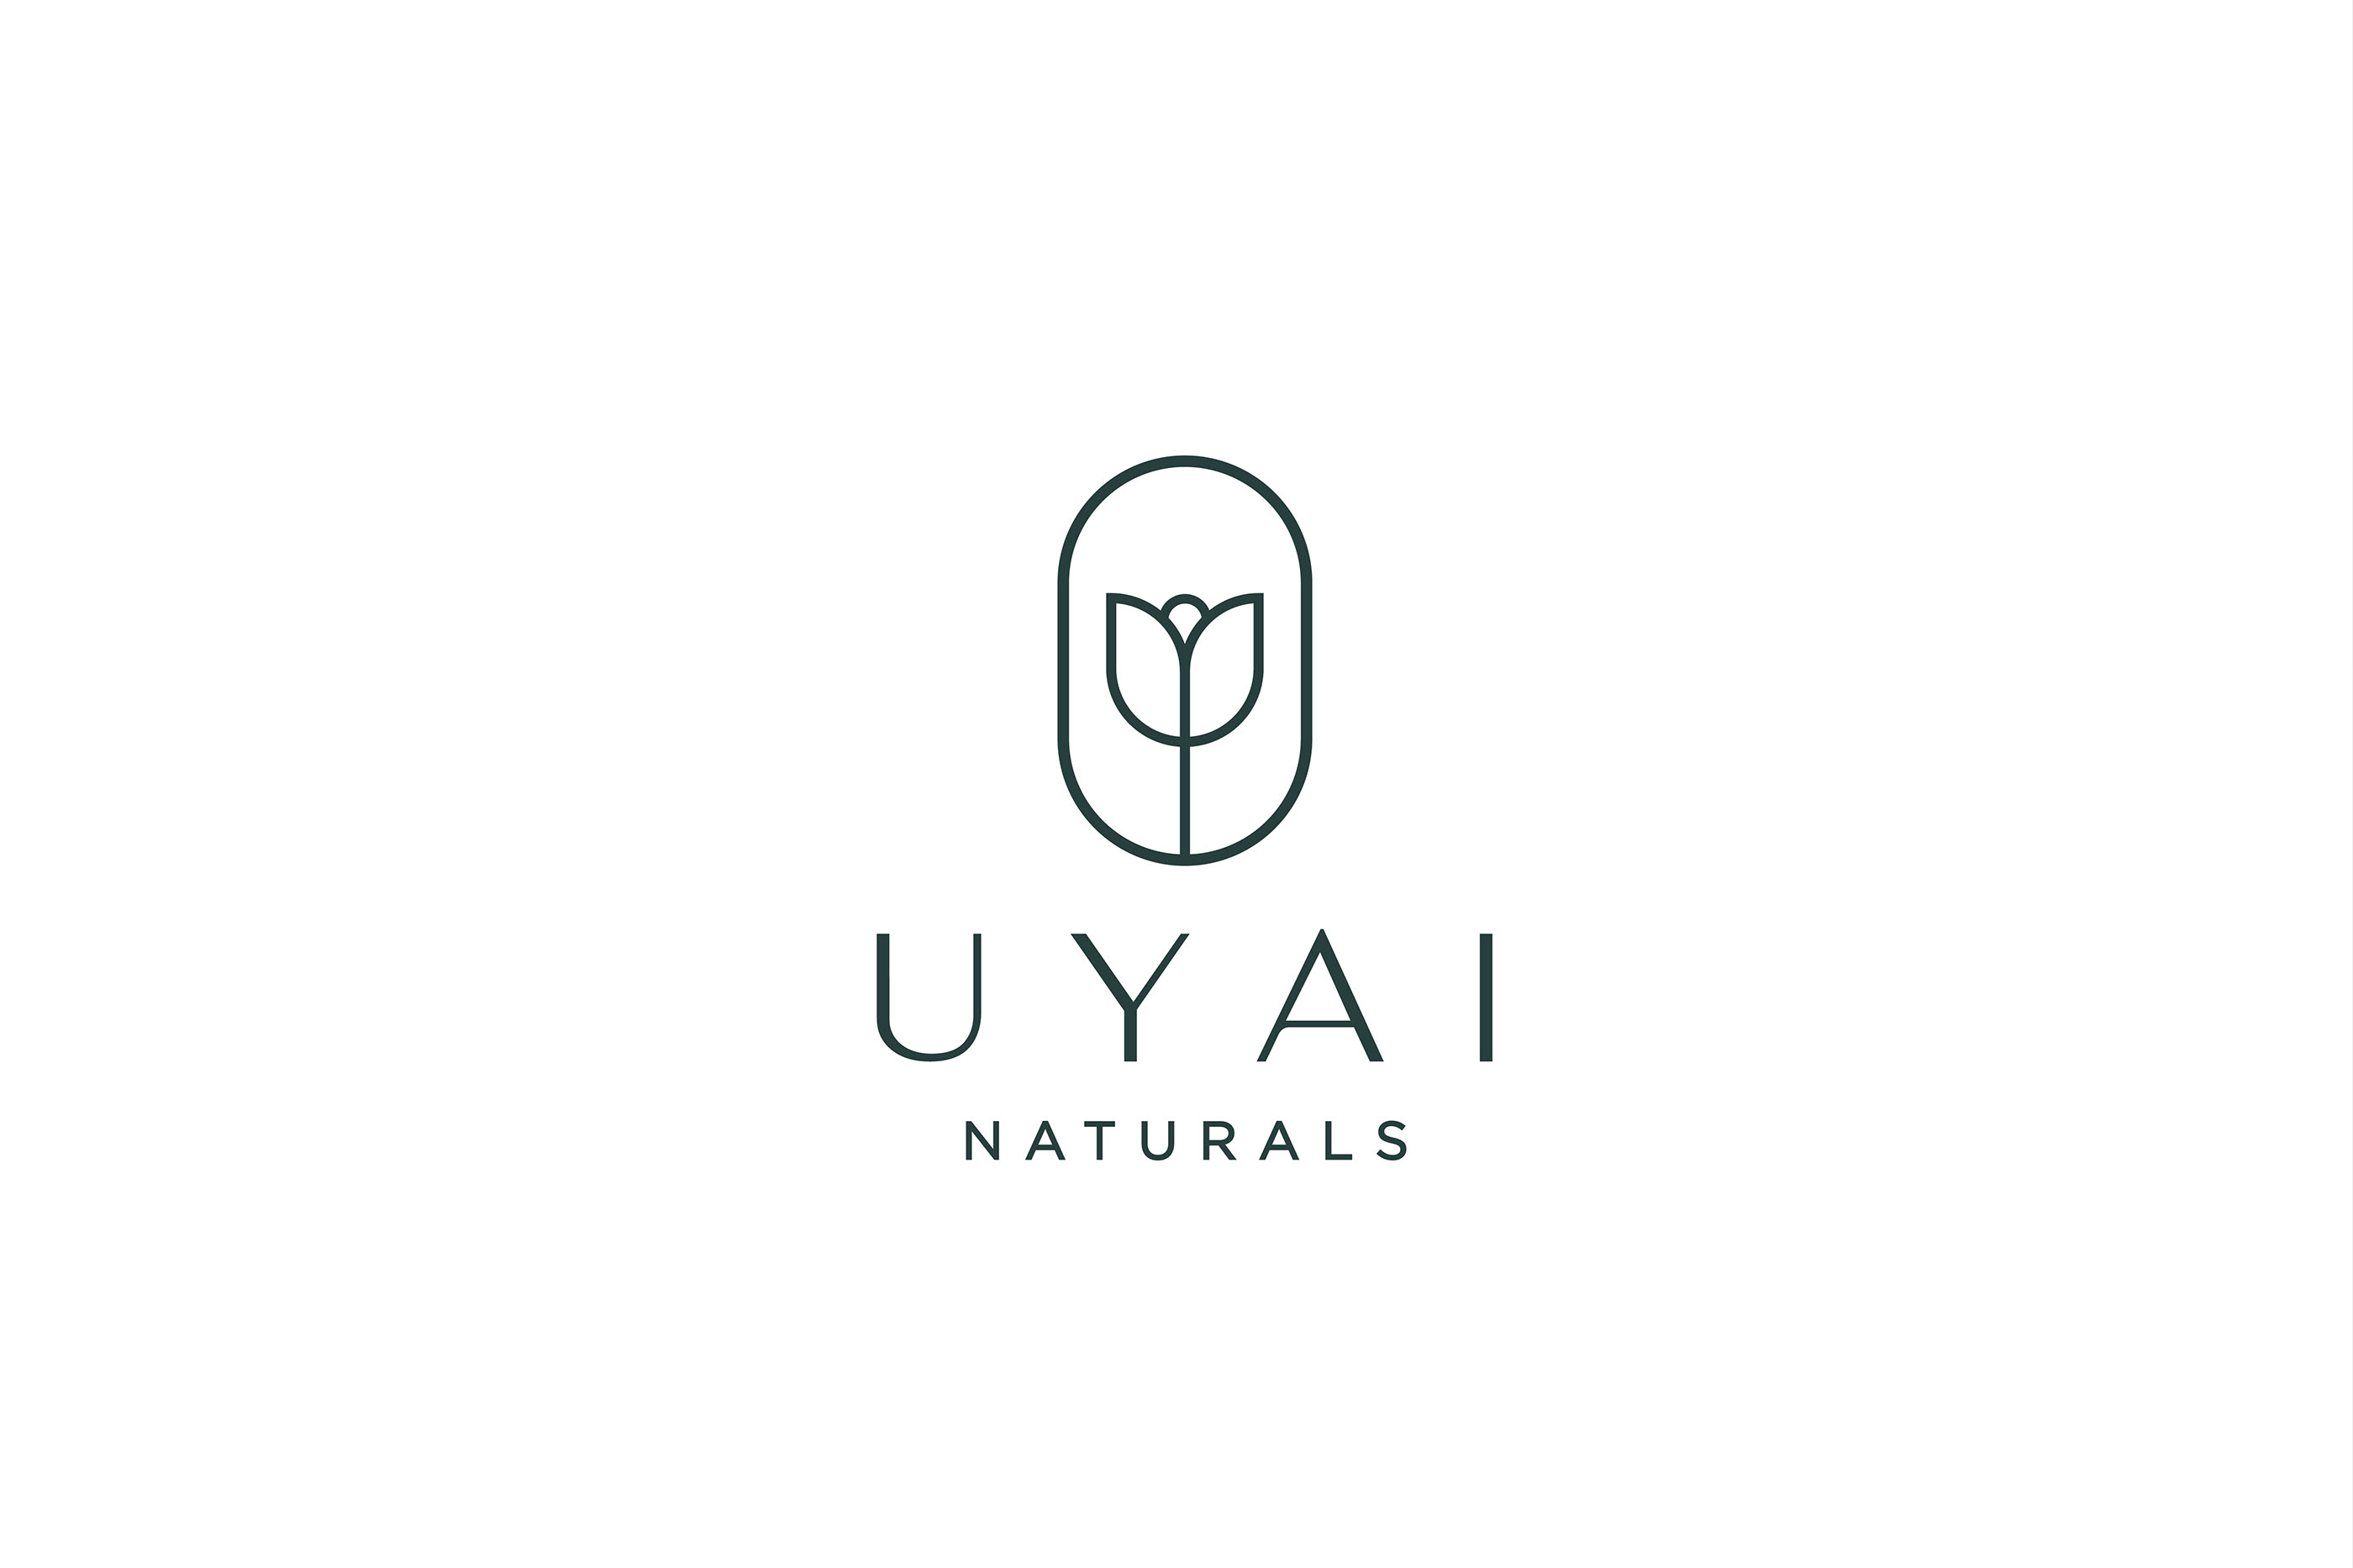 Uyai Naturals Brand Identity on Behance